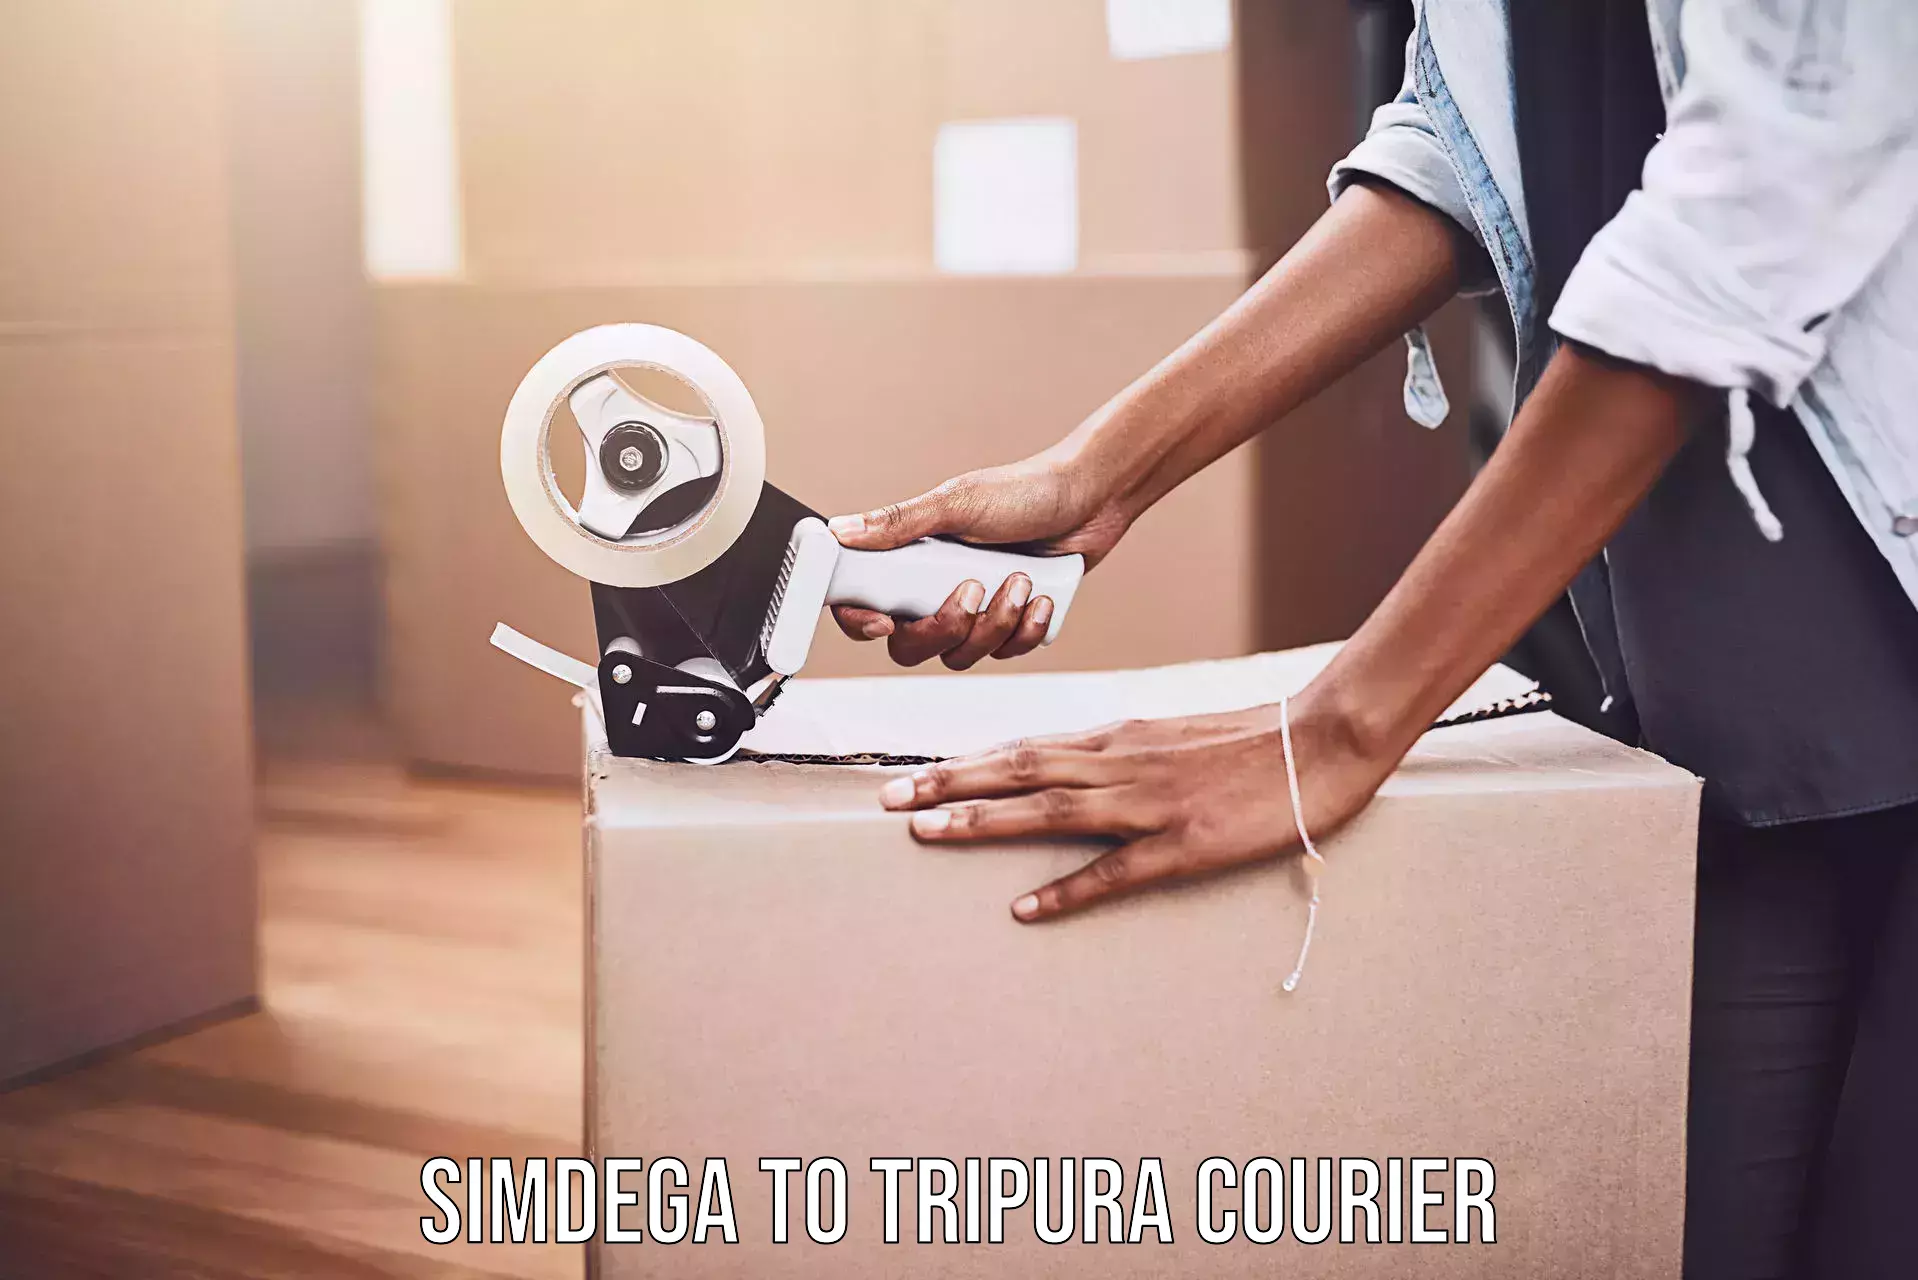 Customer-centric shipping Simdega to Tripura